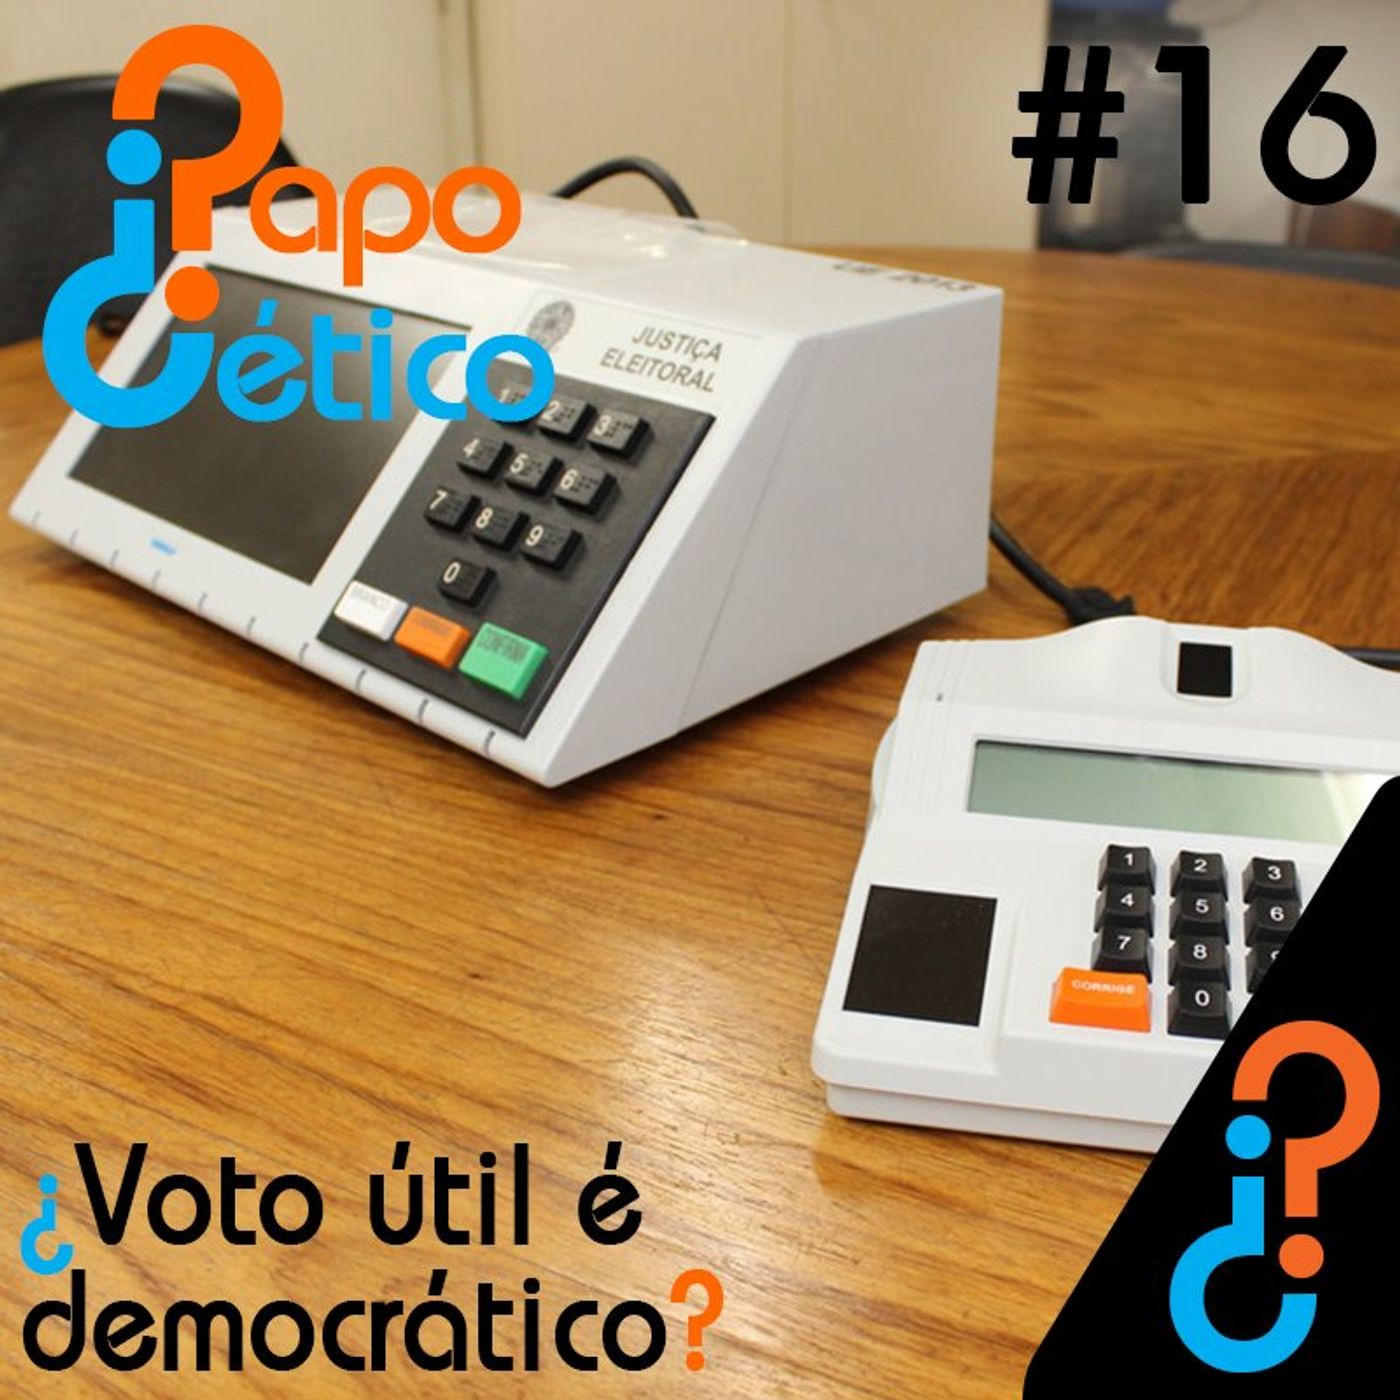 Papo Cético #16 – ¿Voto útil é democrático?